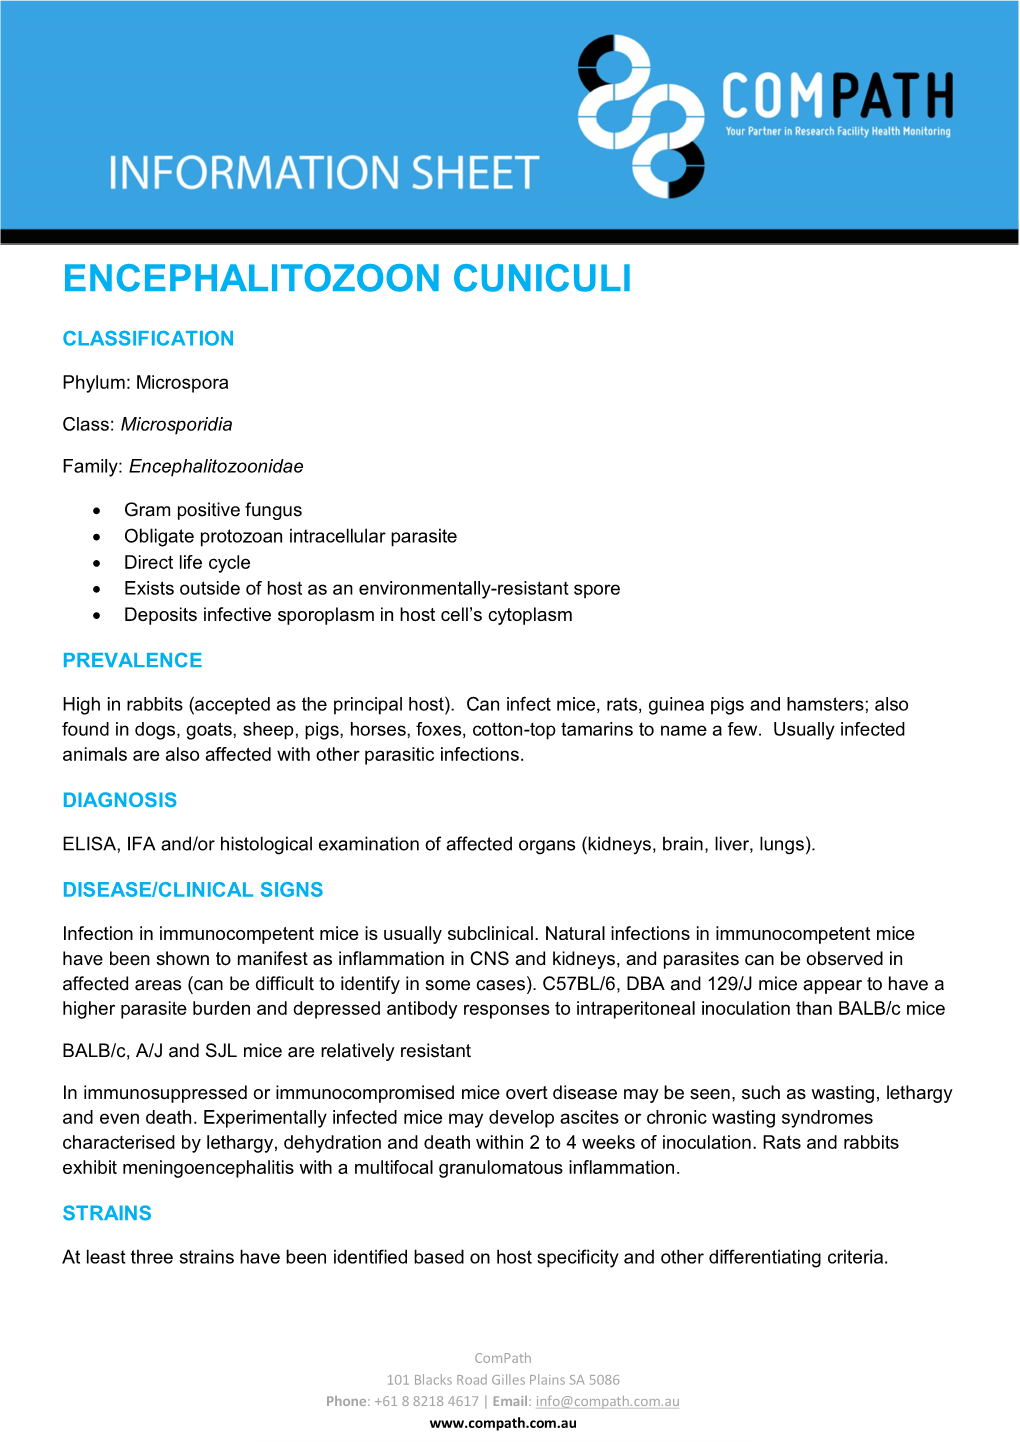 Encephalitozoon Cuniculi (ECUN)